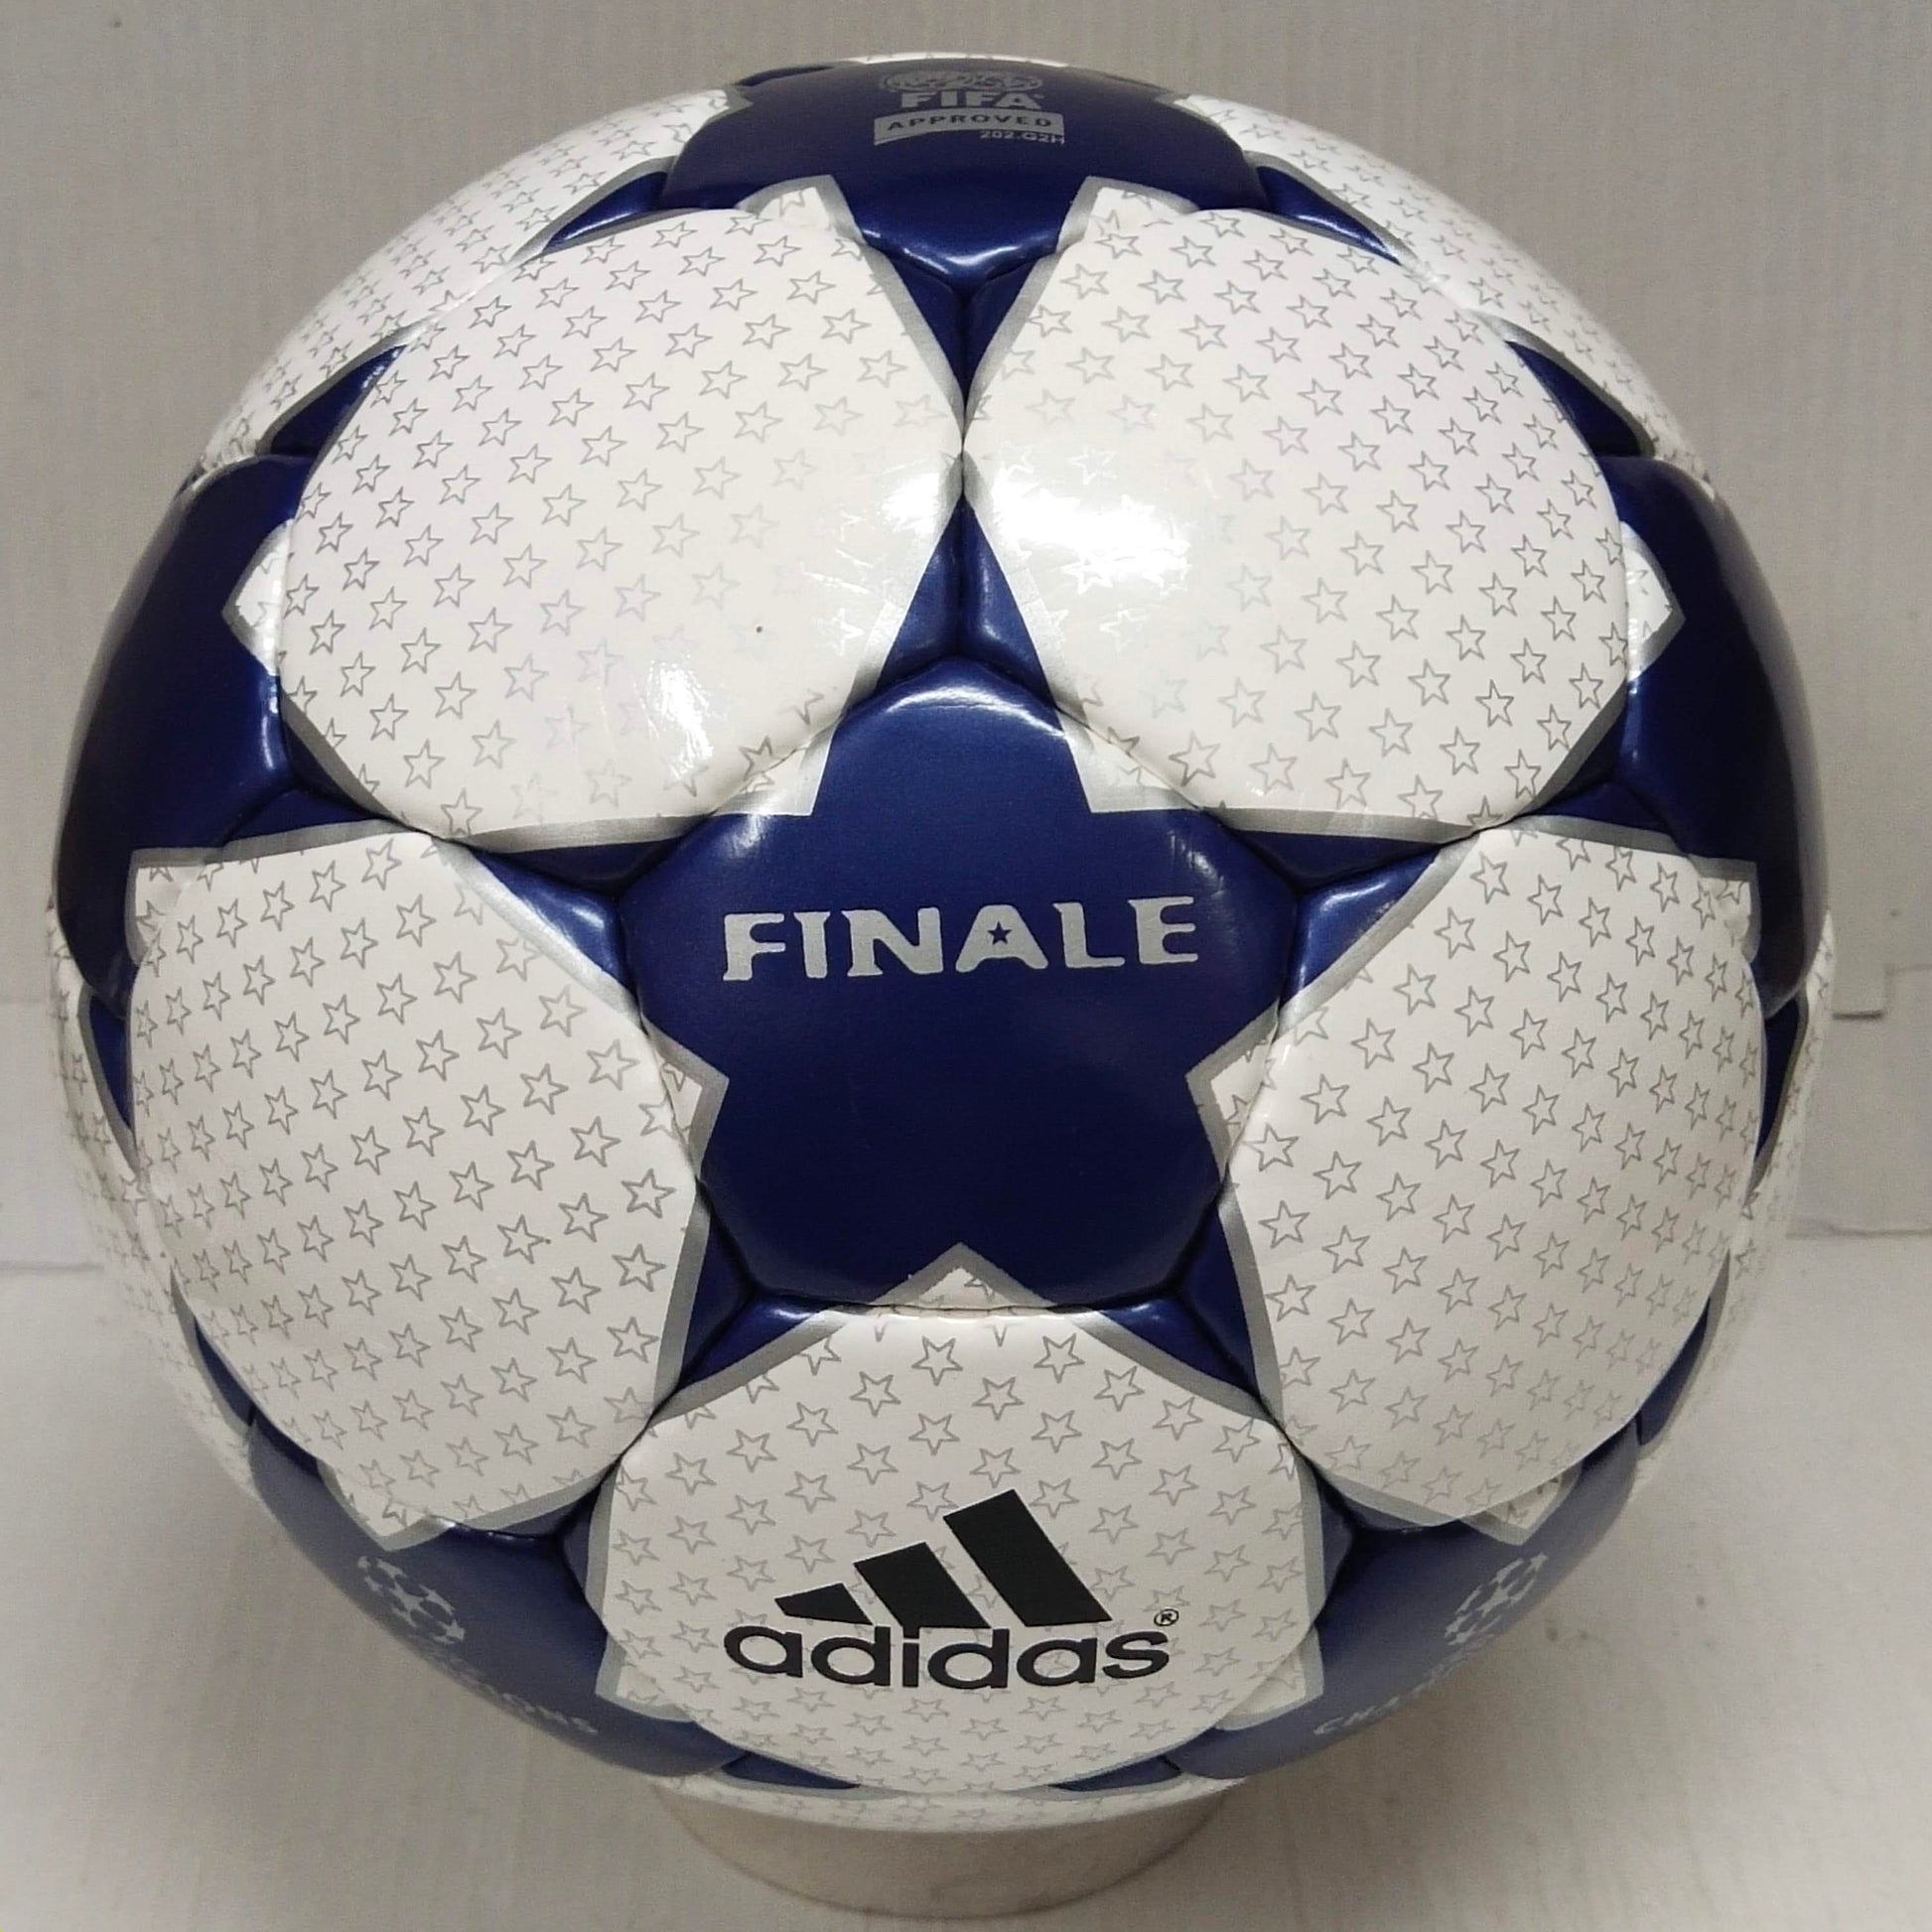 Adidas Finale AufSchalke | 2003-2004 | Final Ball | UEFA Champions League Ball | Size 5 02